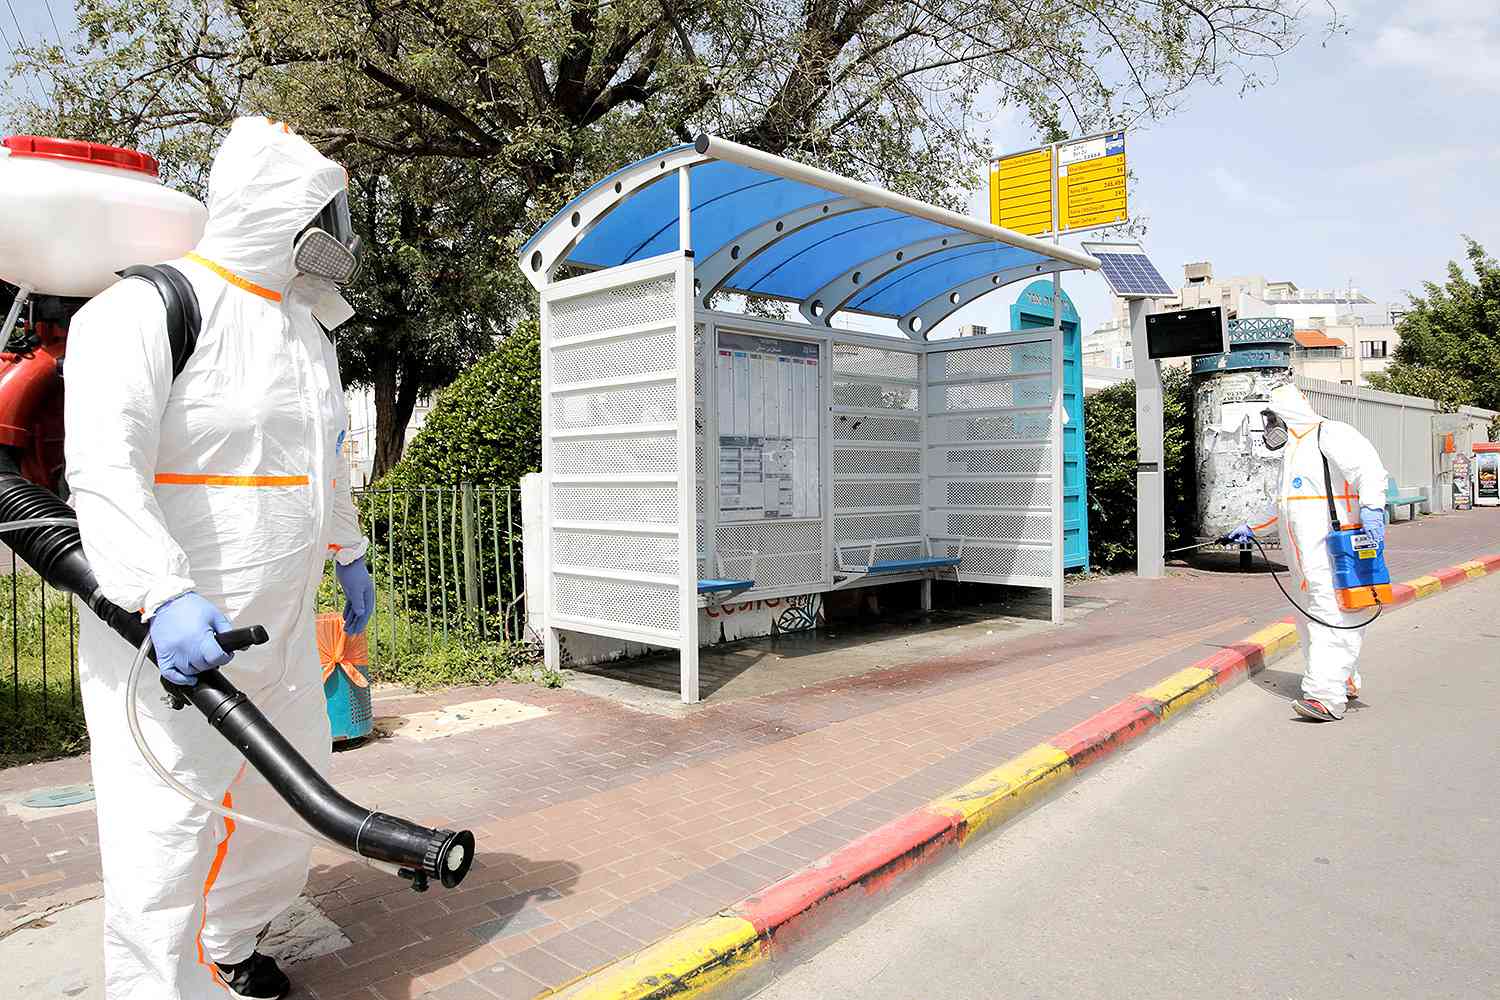 Israeli sanitation workers